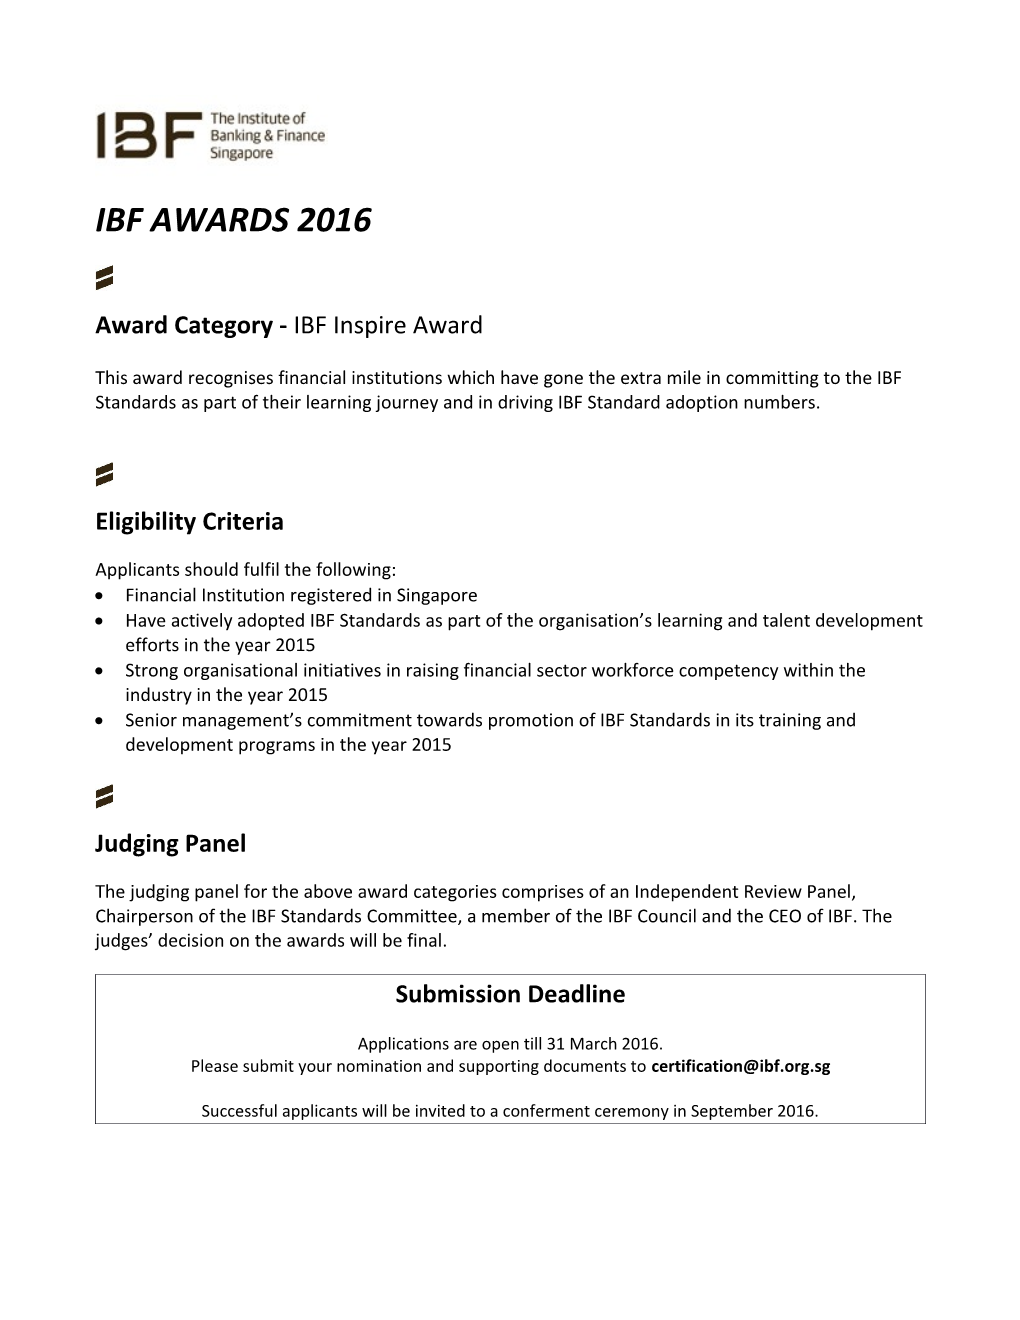 Award Category - IBF Inspire Award